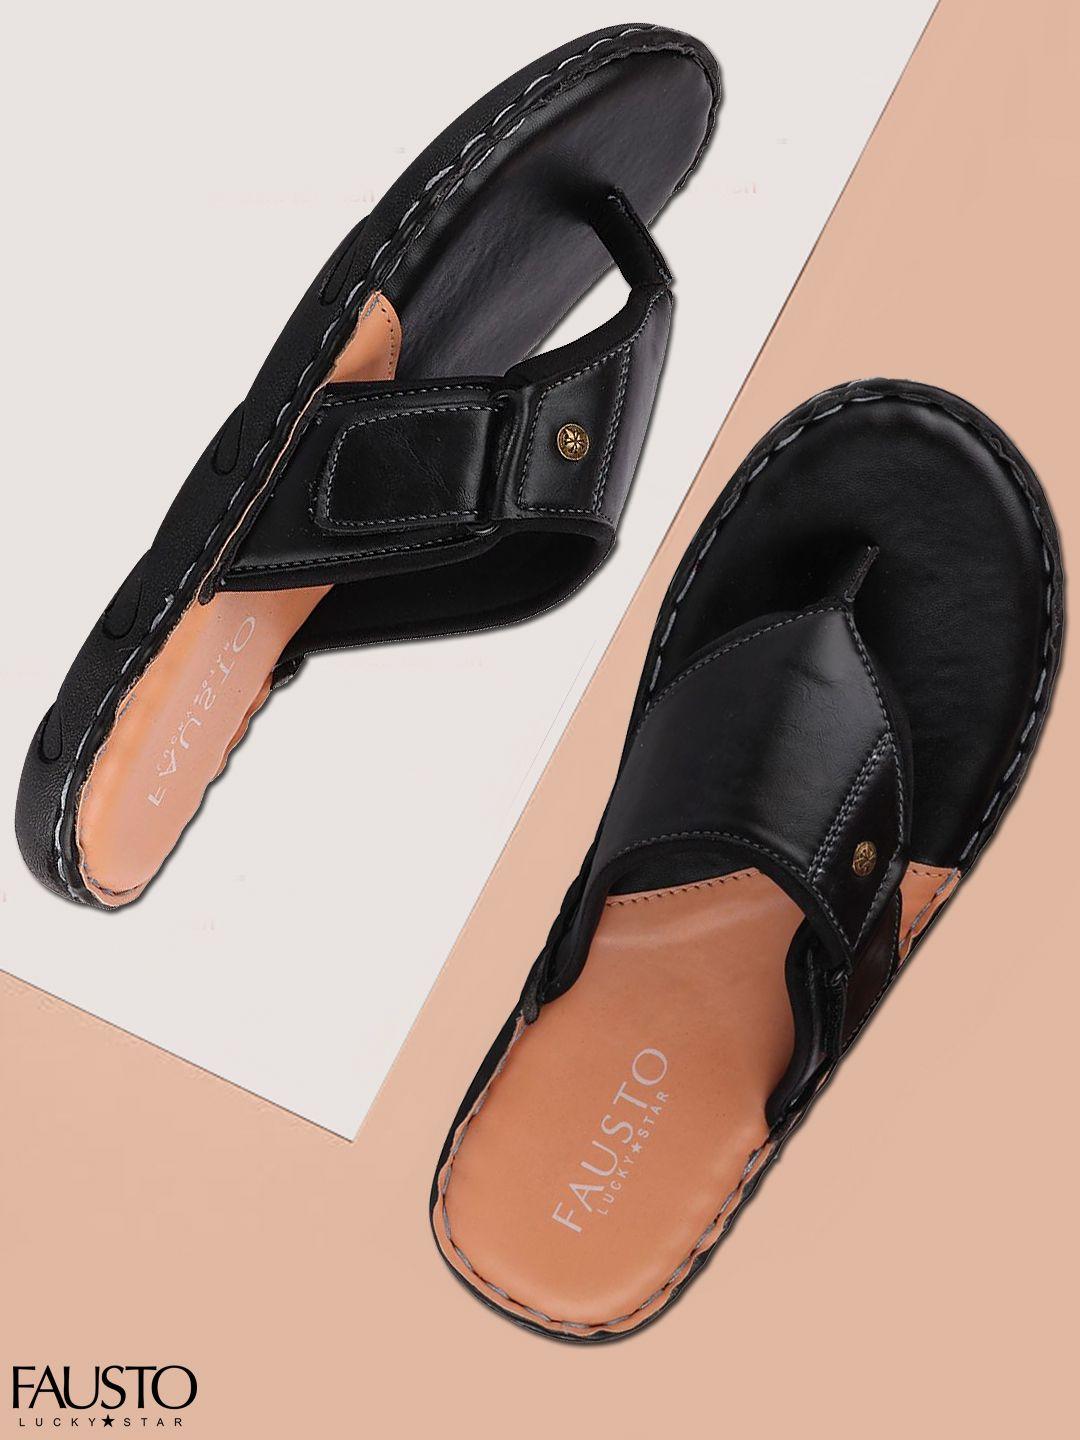 fausto men black solid comfort sandals